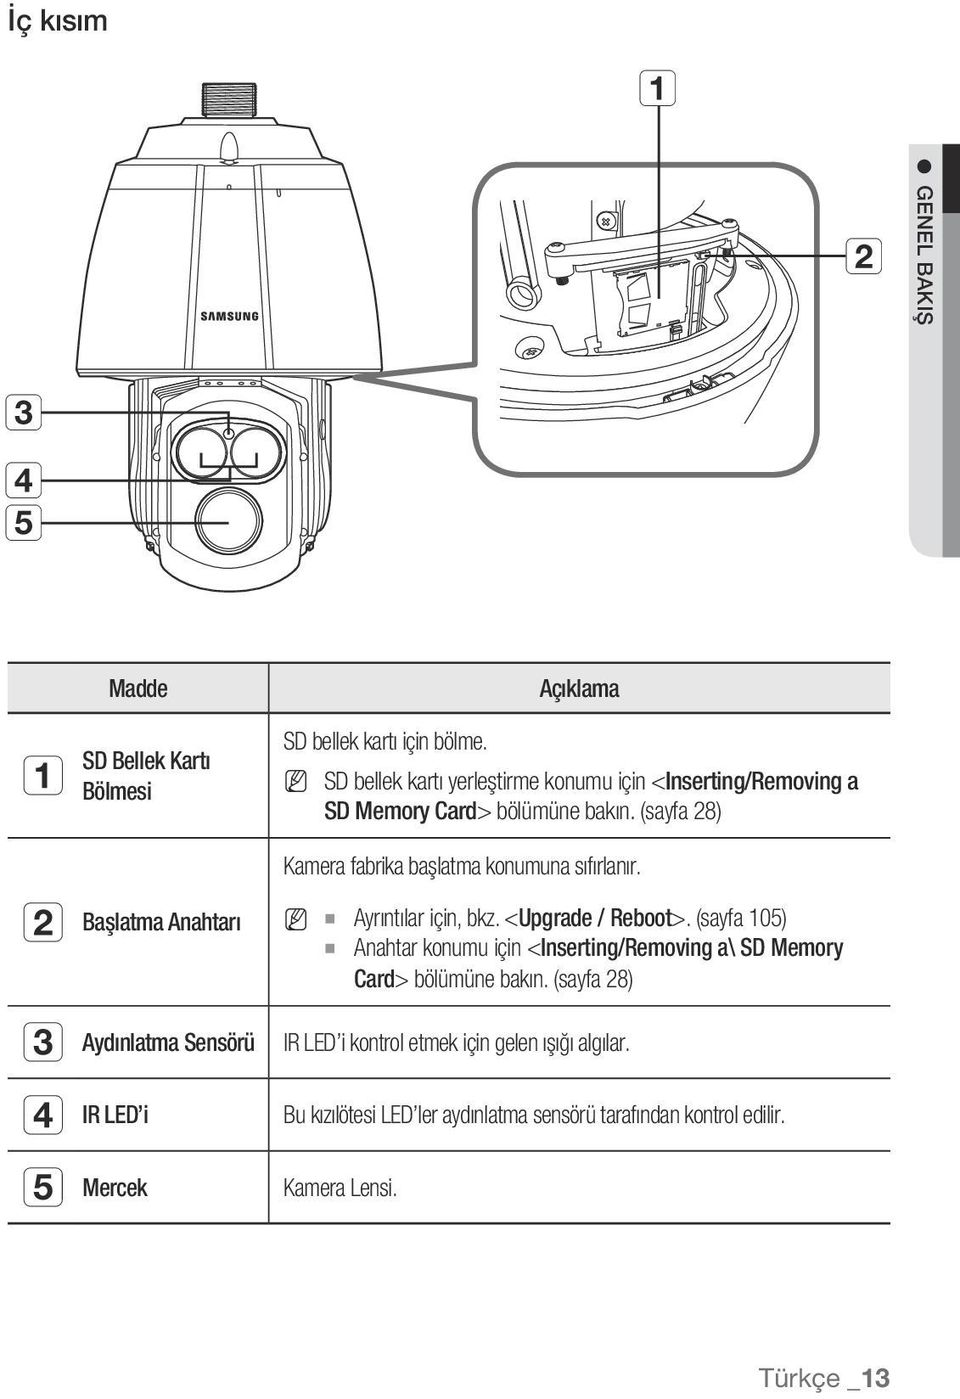 (sayfa 28) b c d Başlatma Anahtarı Aydınlatma Sensörü IR LED i Kamera fabrika başlatma konumuna sıfırlanır. MM Ayrıntılar için, bkz.